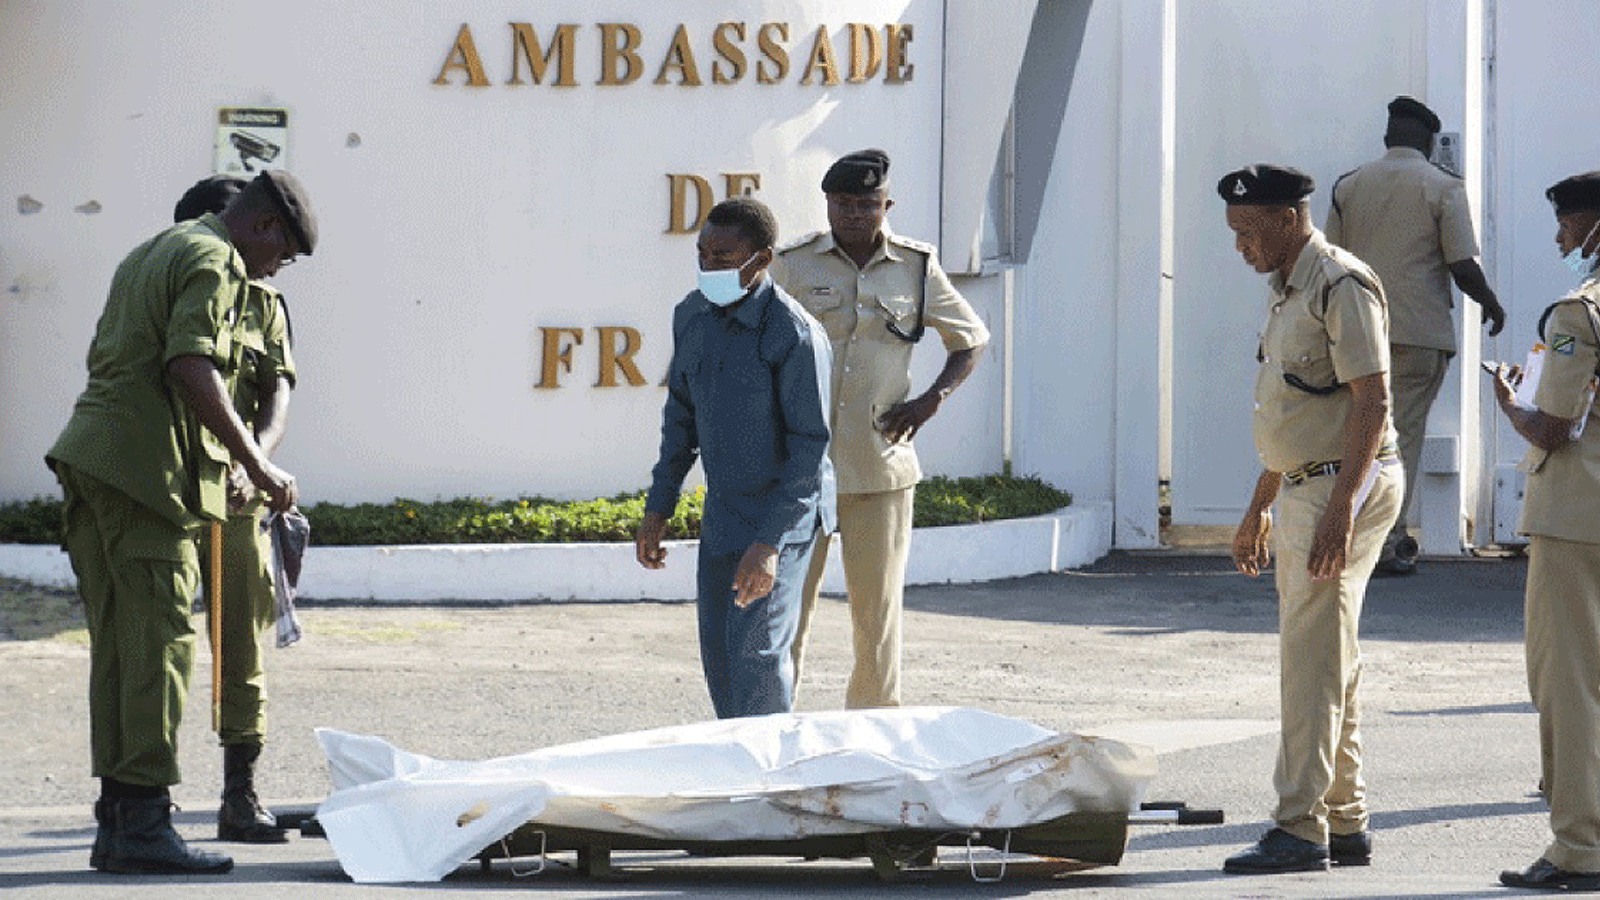 صورة متداولة عبر تويتر من موقع الحادث أمام السفارة الفرنسية في تنزانيا